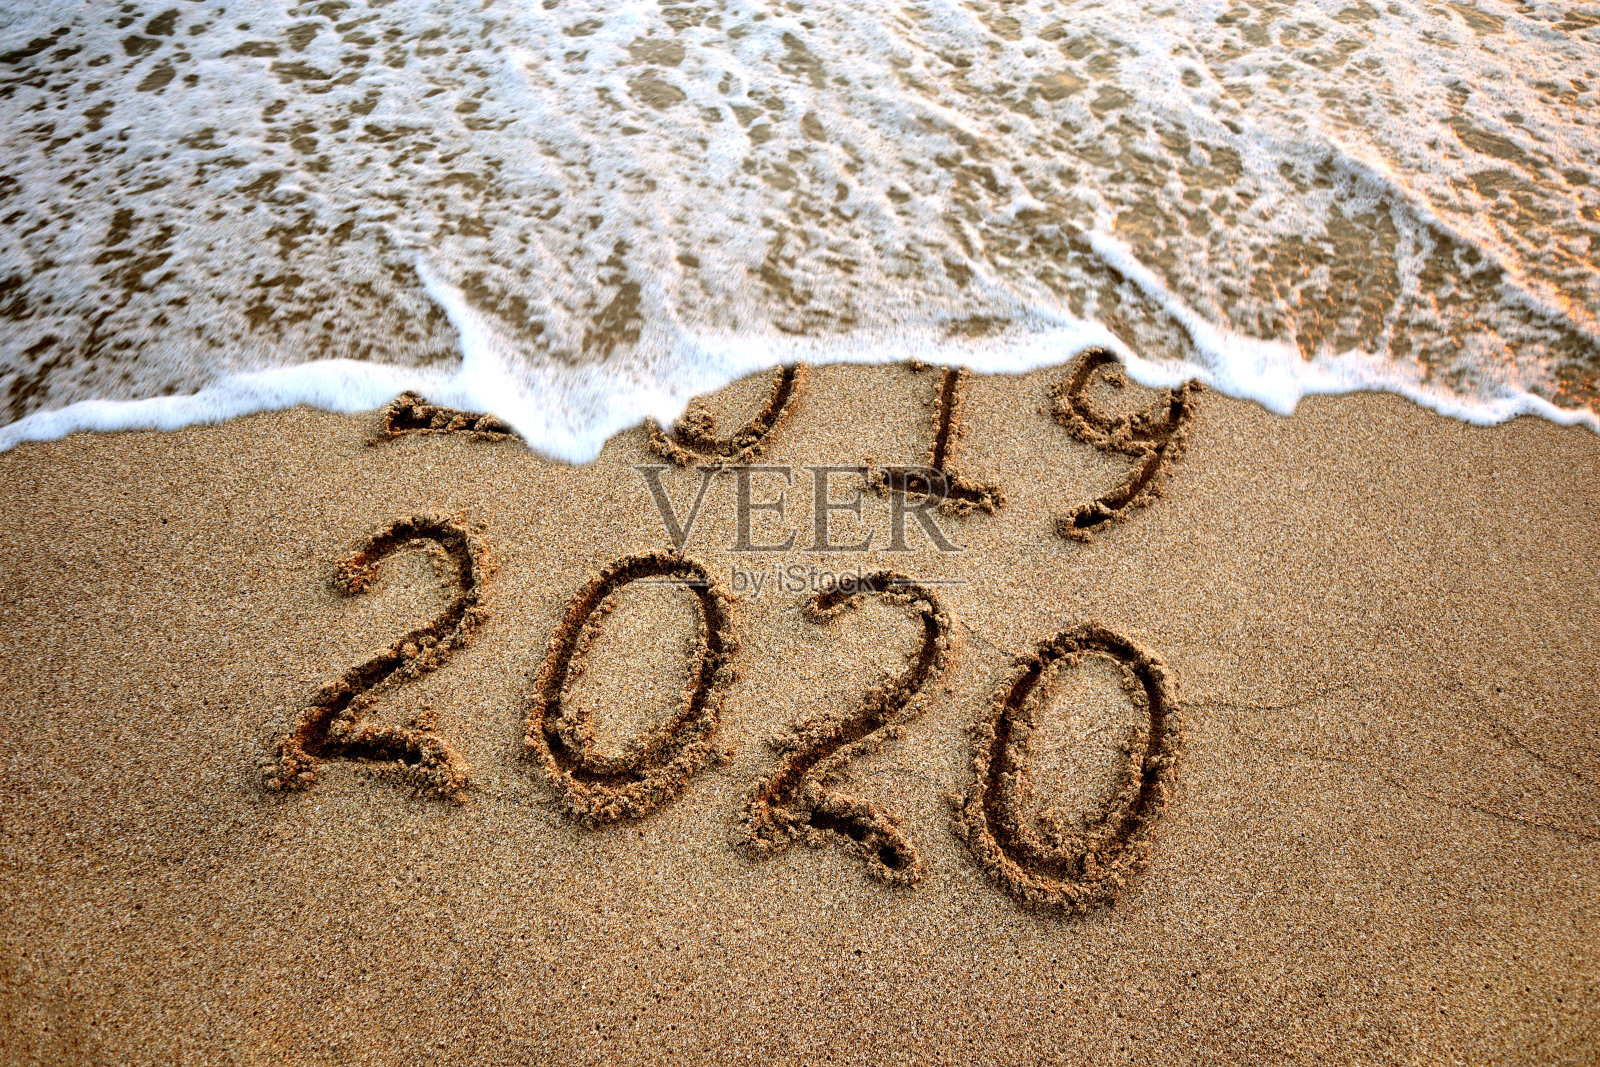 新2020年照片摄影图片